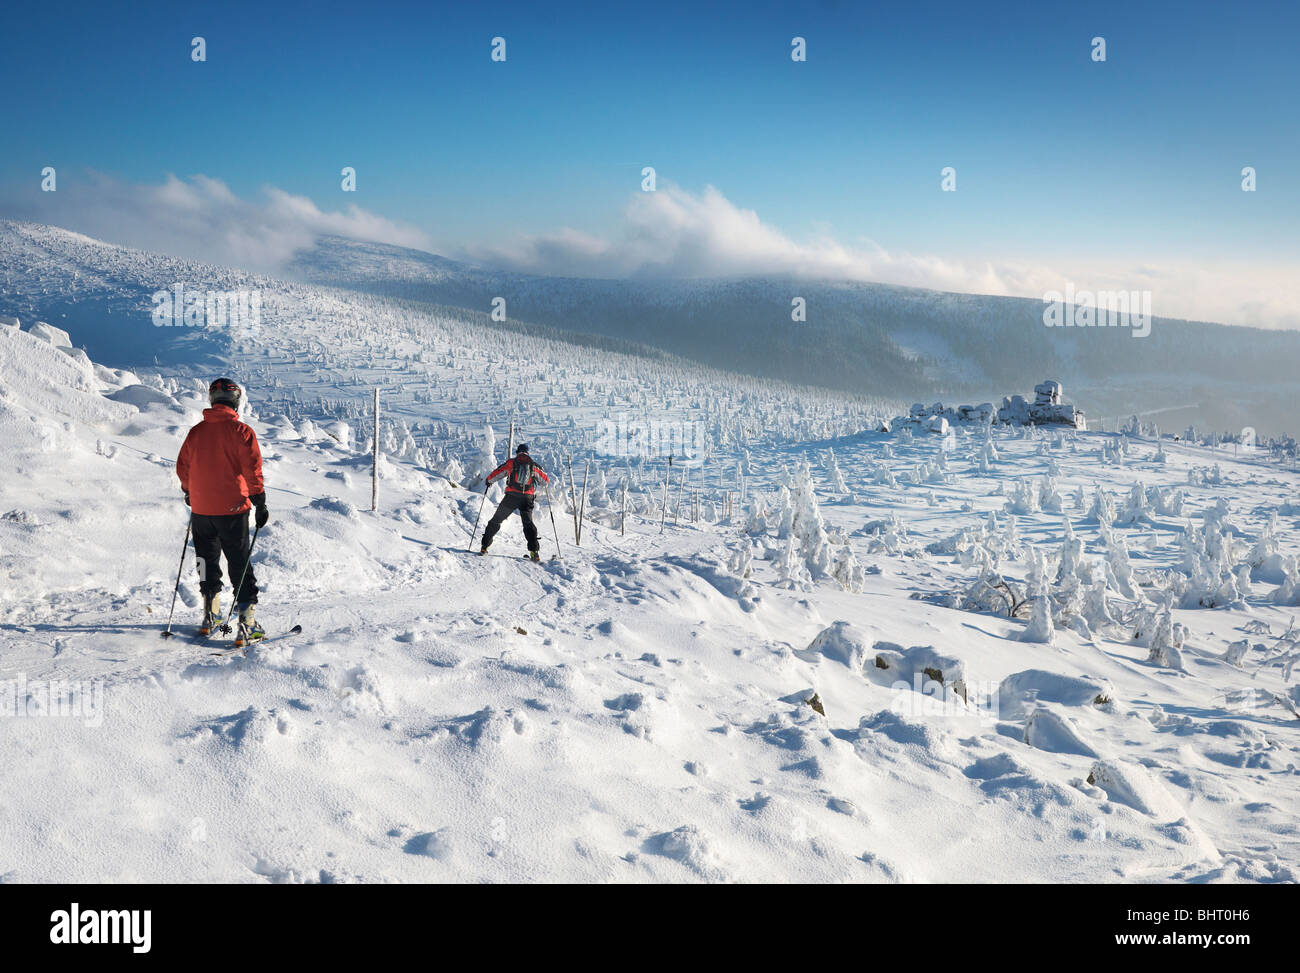 Two skiers in winter Karkonosze Mountains, Poland Stock Photo